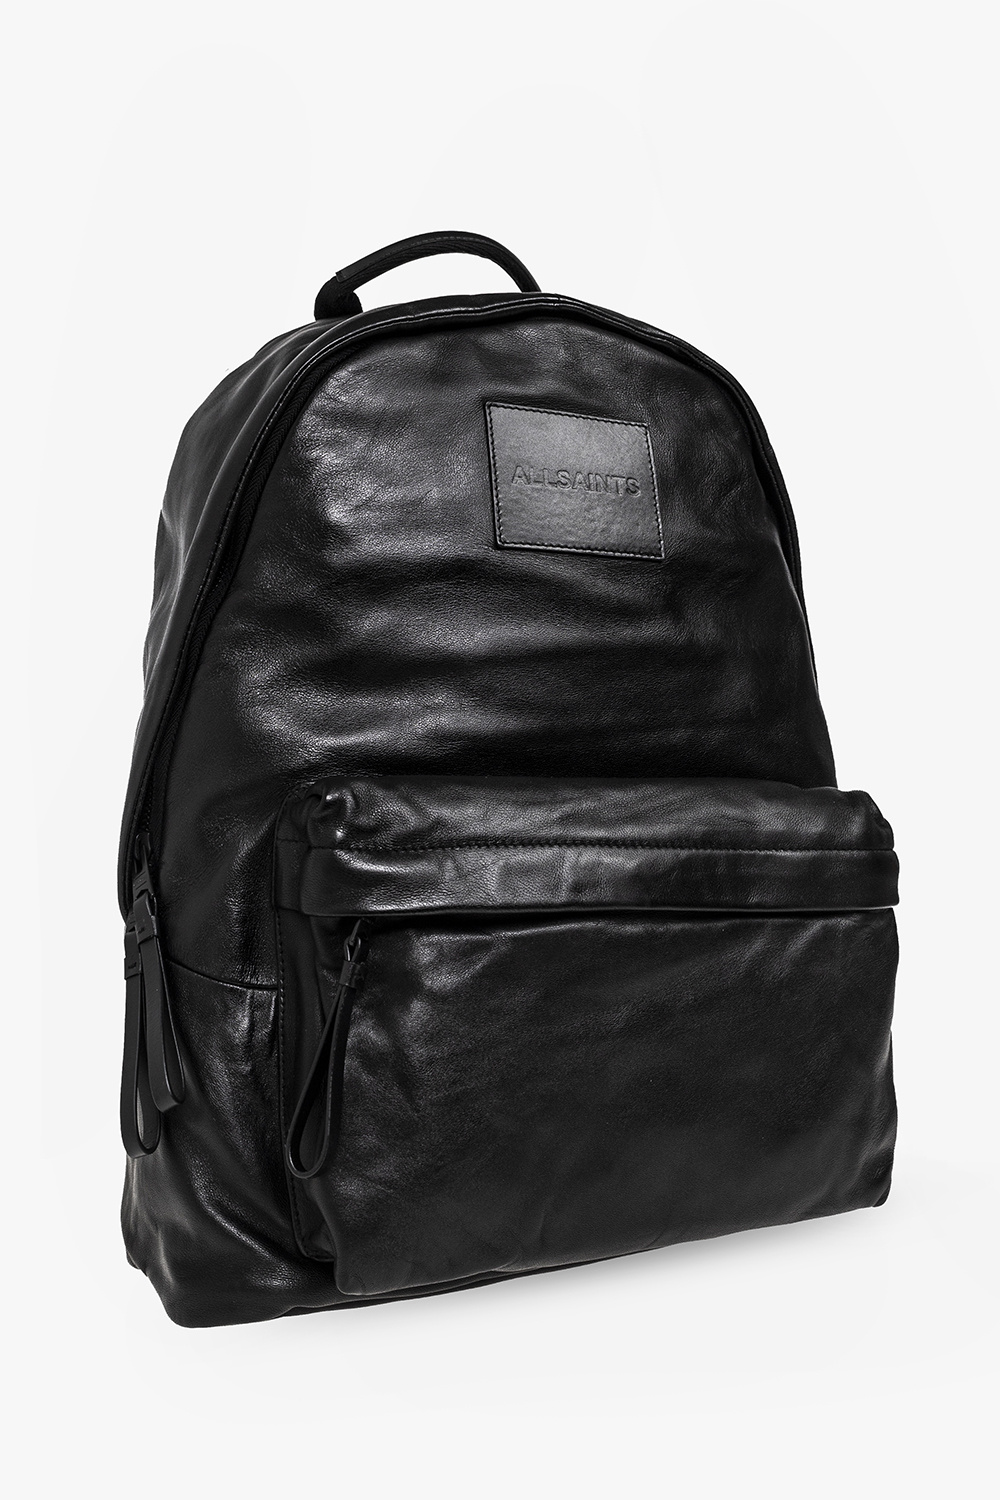 AllSaints ‘Carabiner’ leather backpack